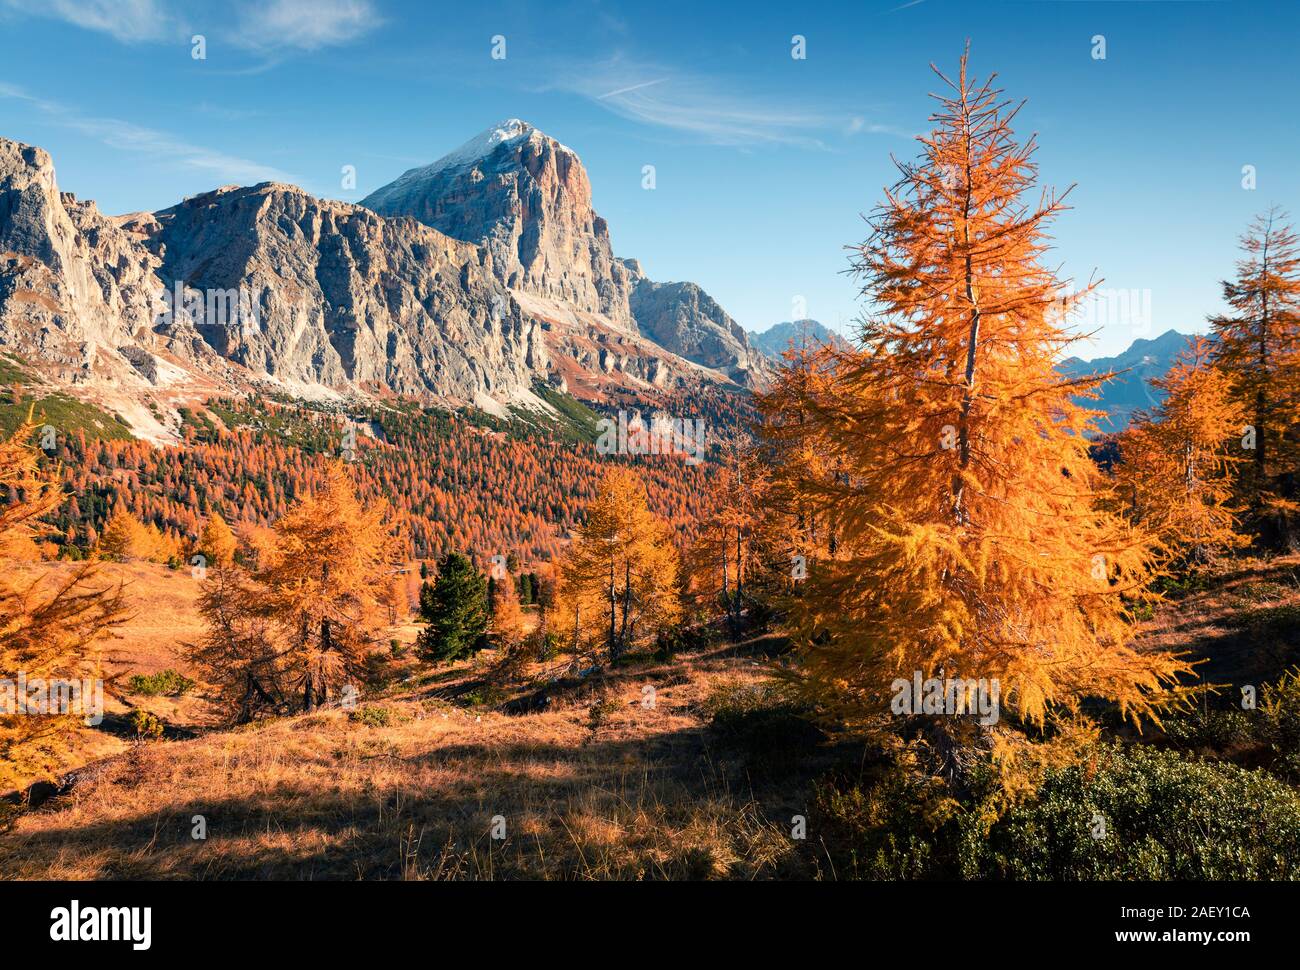 Vue splendide du haut de la montagne avec col Falzarego Lagazuoi. Matin d'automne dans les Alpes dolomitiques, Cortina d'Ampezzo, Italie, Europe lacattion Banque D'Images